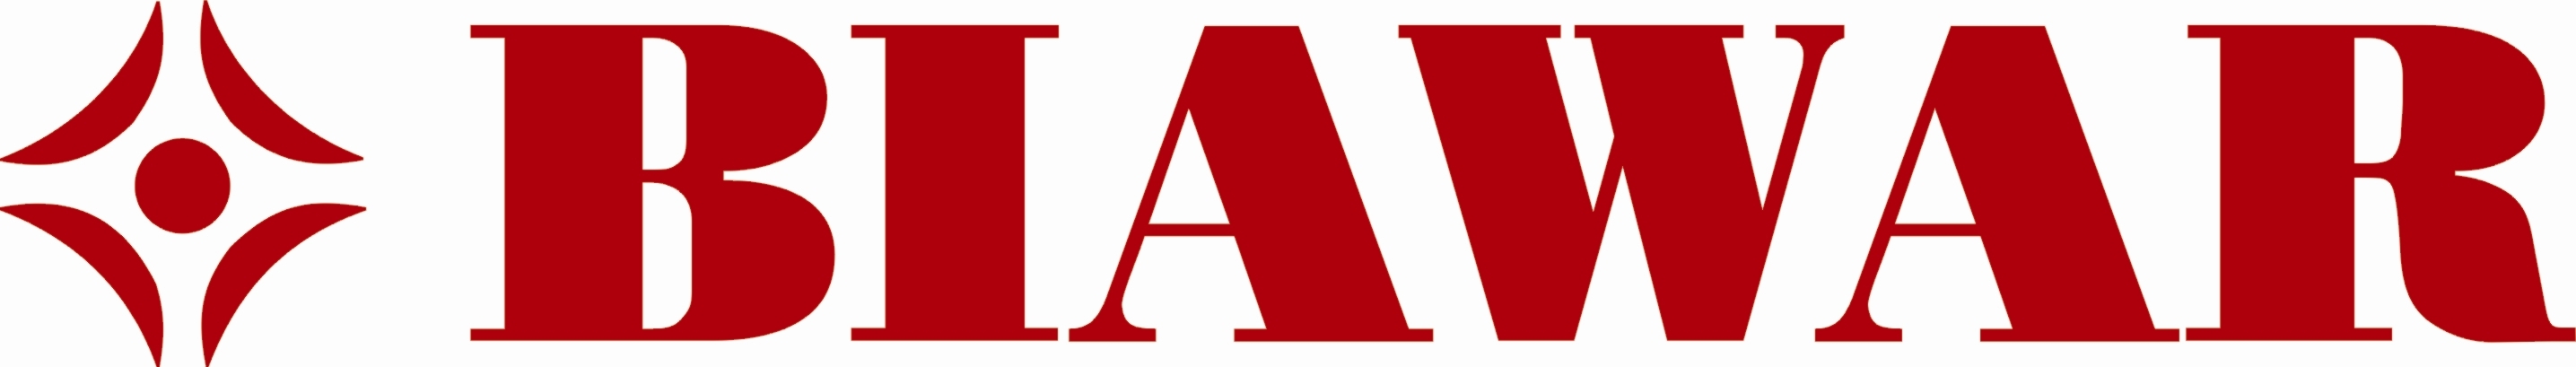 Логотип Biawar